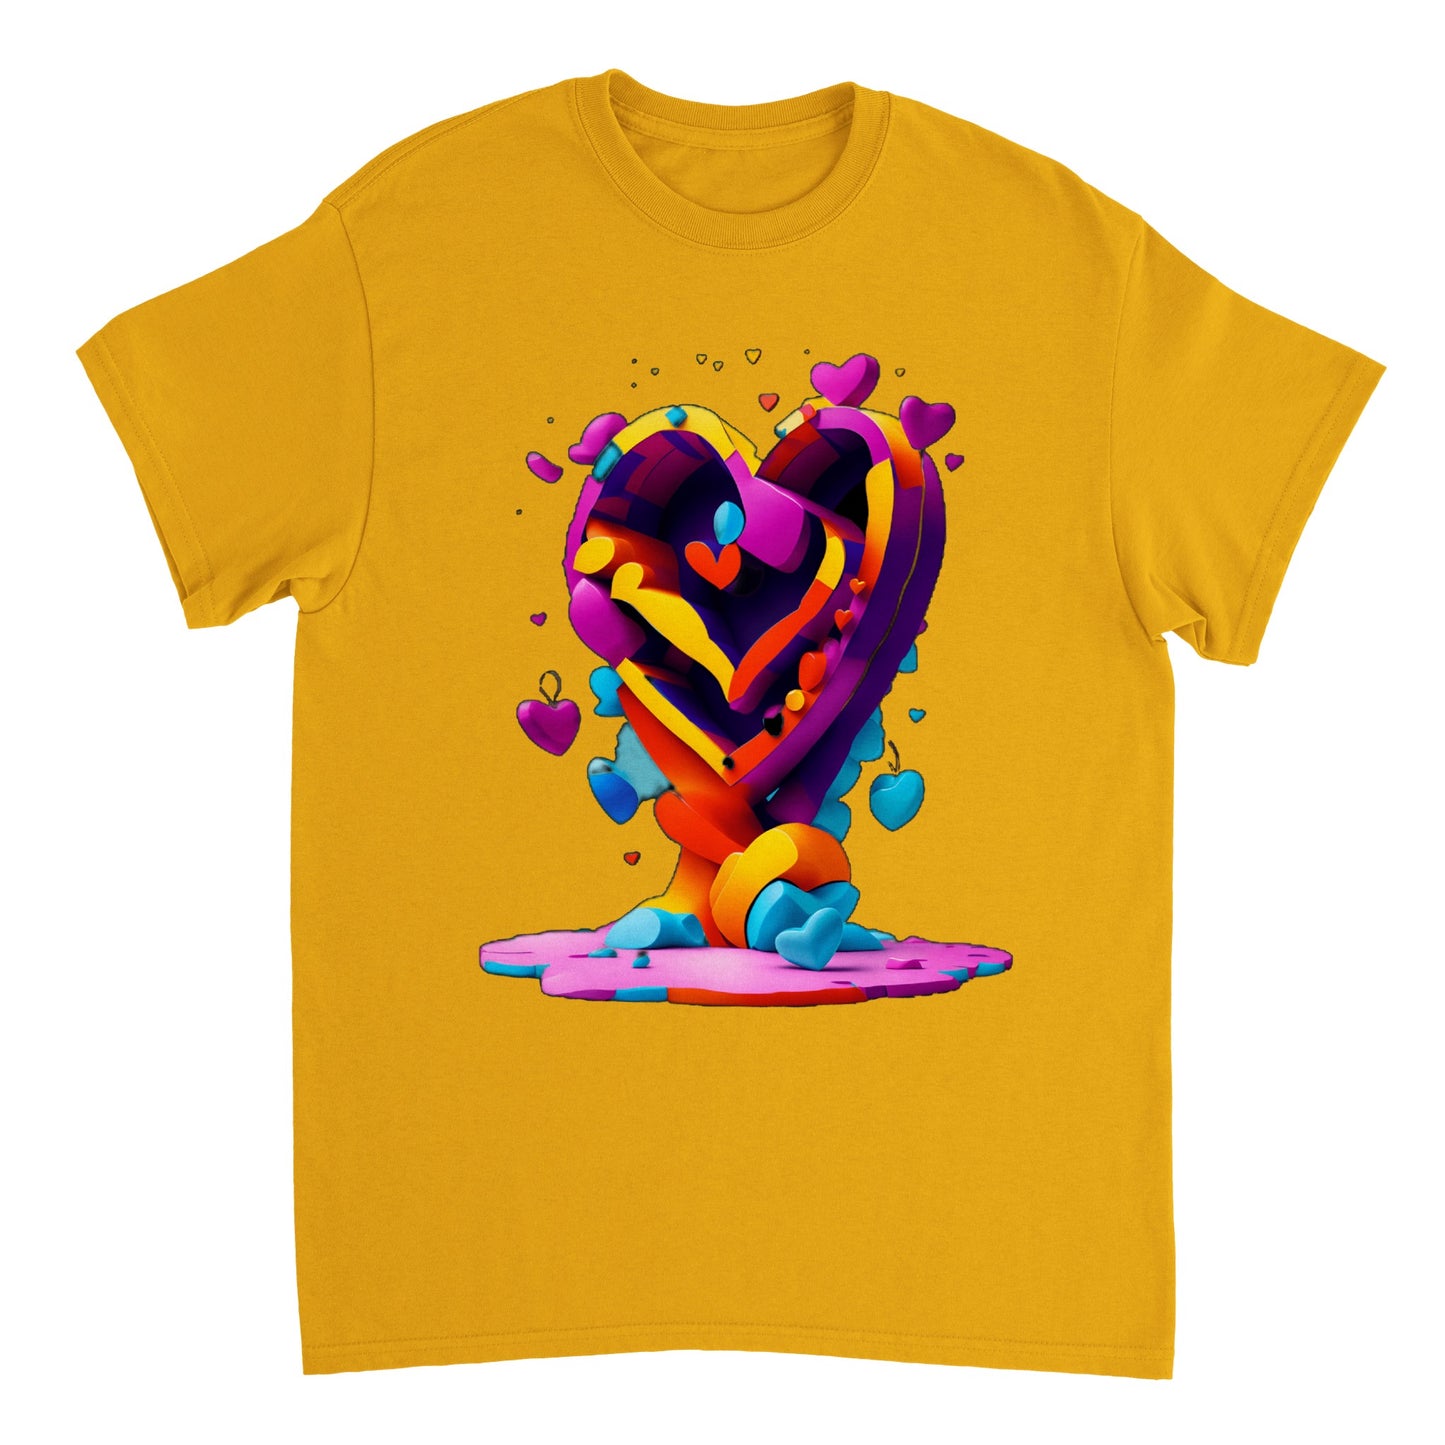 Love Heart - Heavyweight Unisex Crewneck T-shirt 27